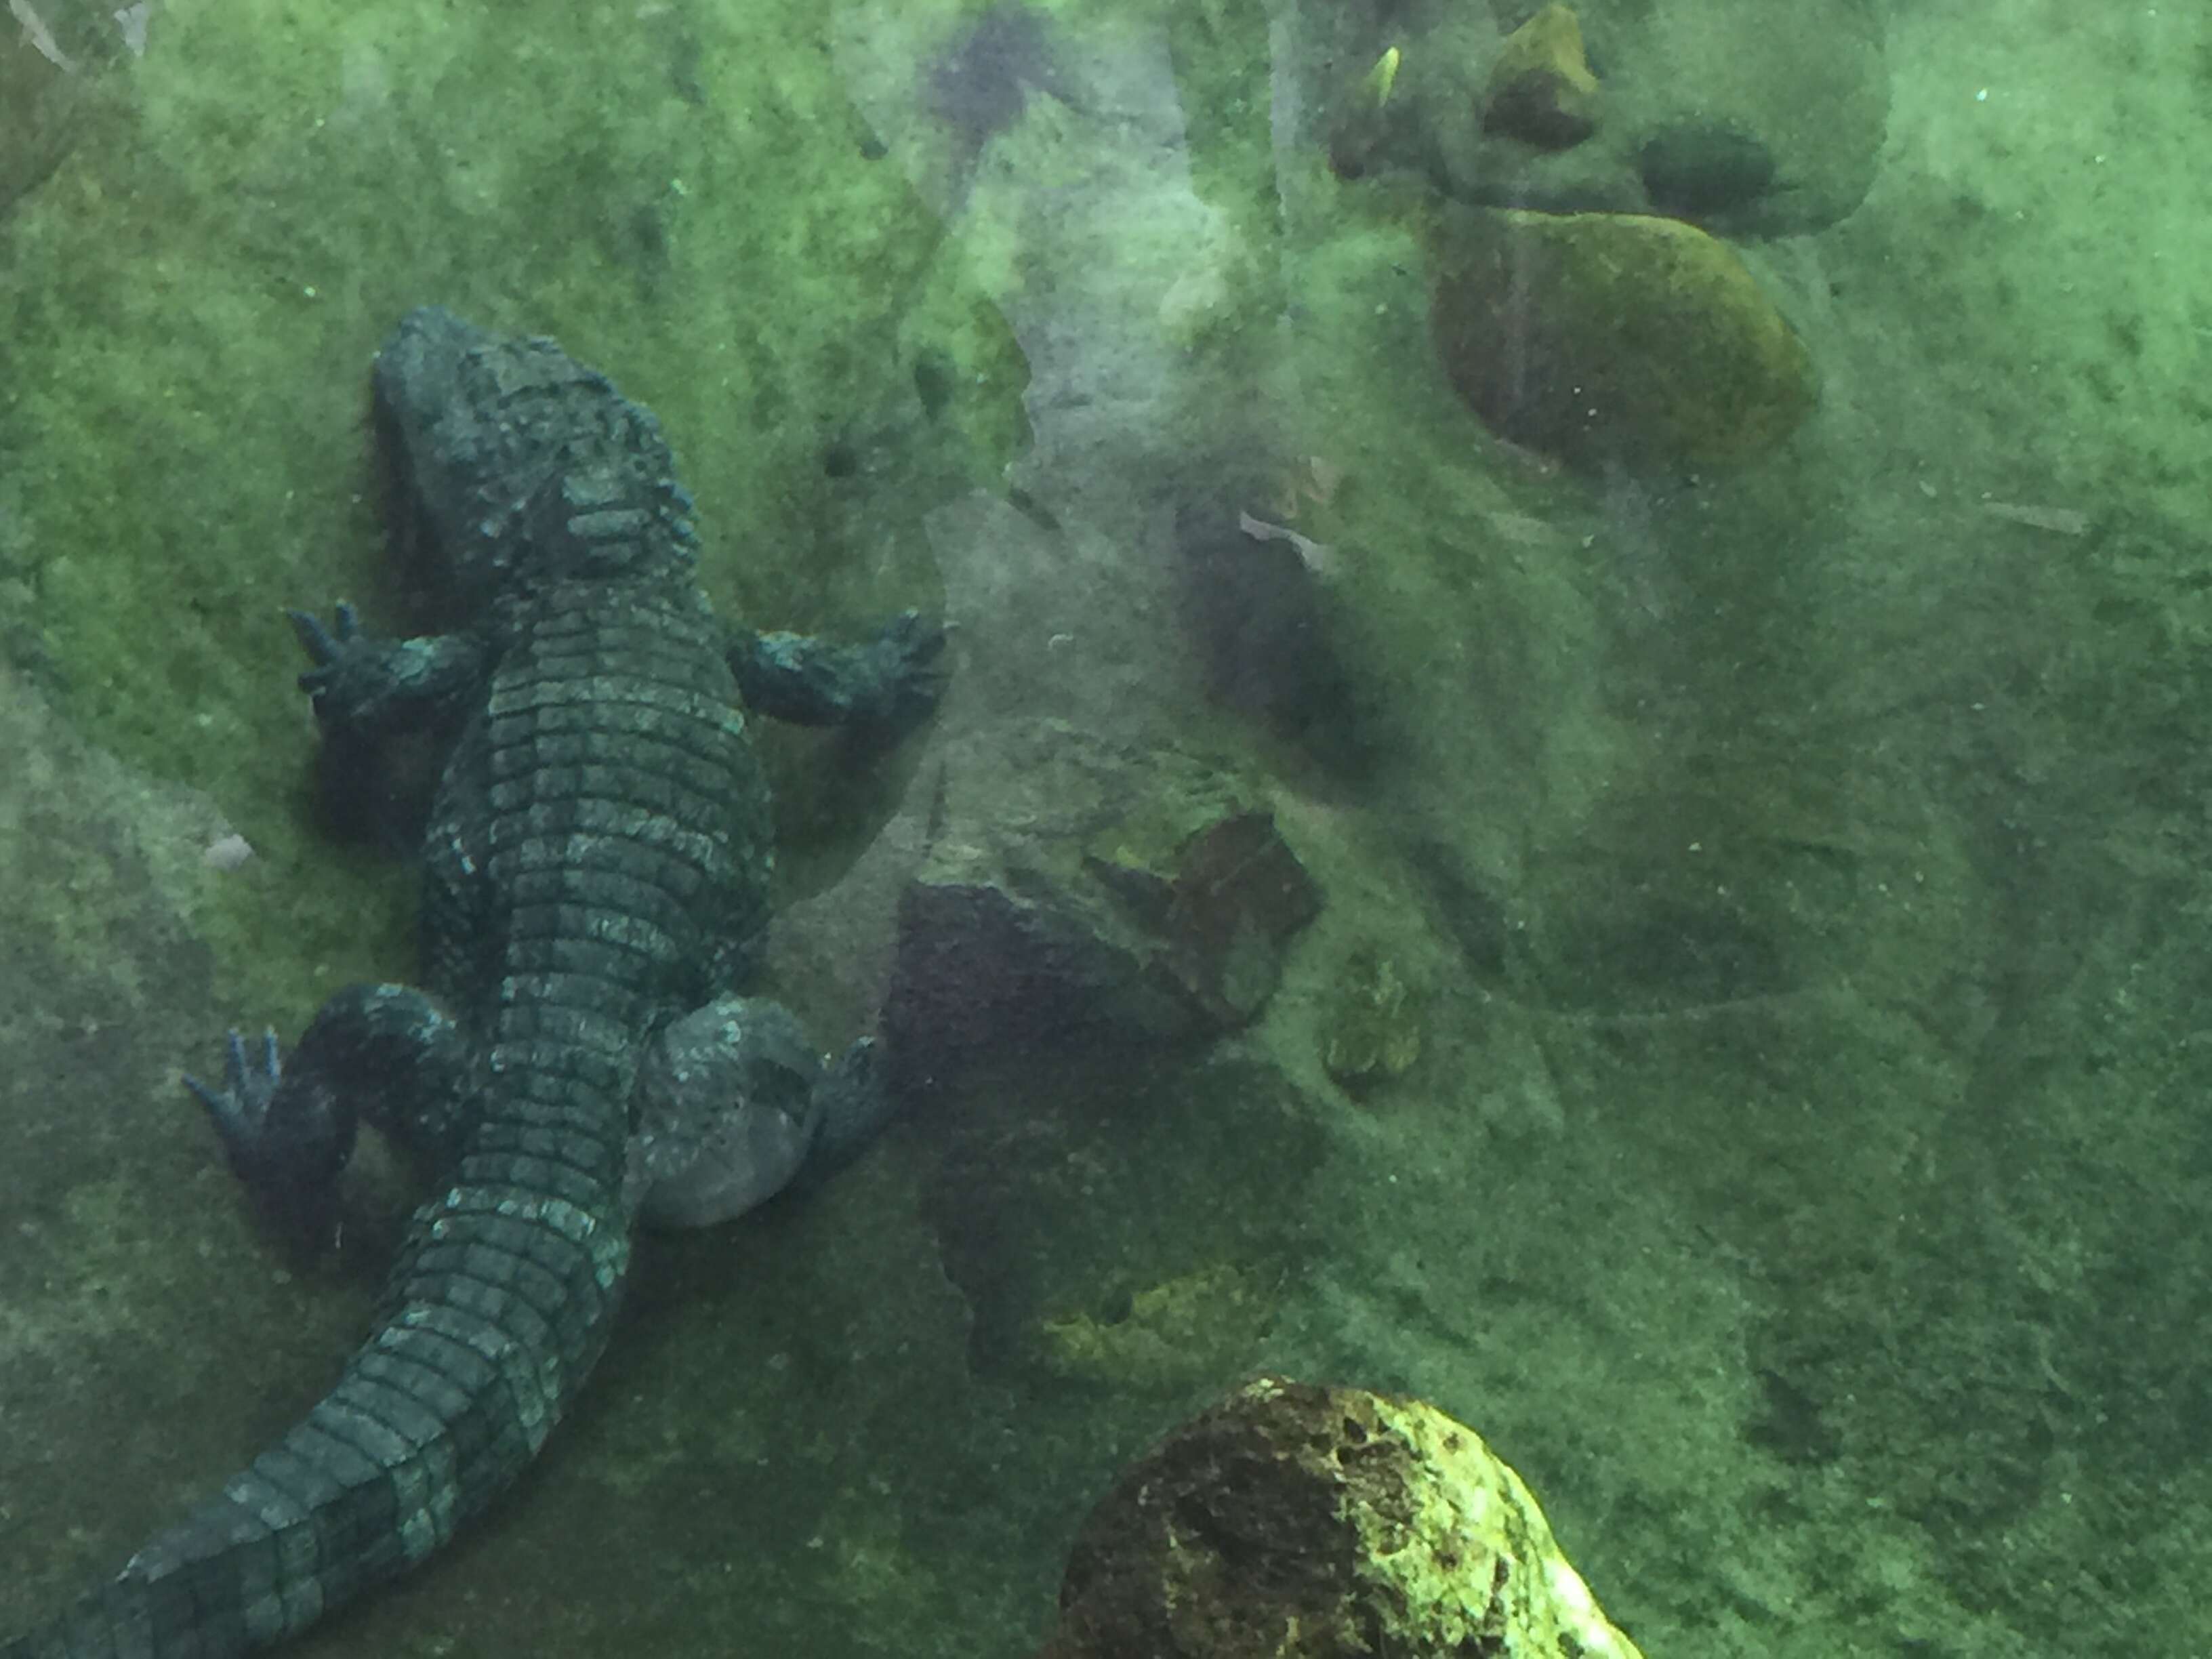 Image of Chinese alligator